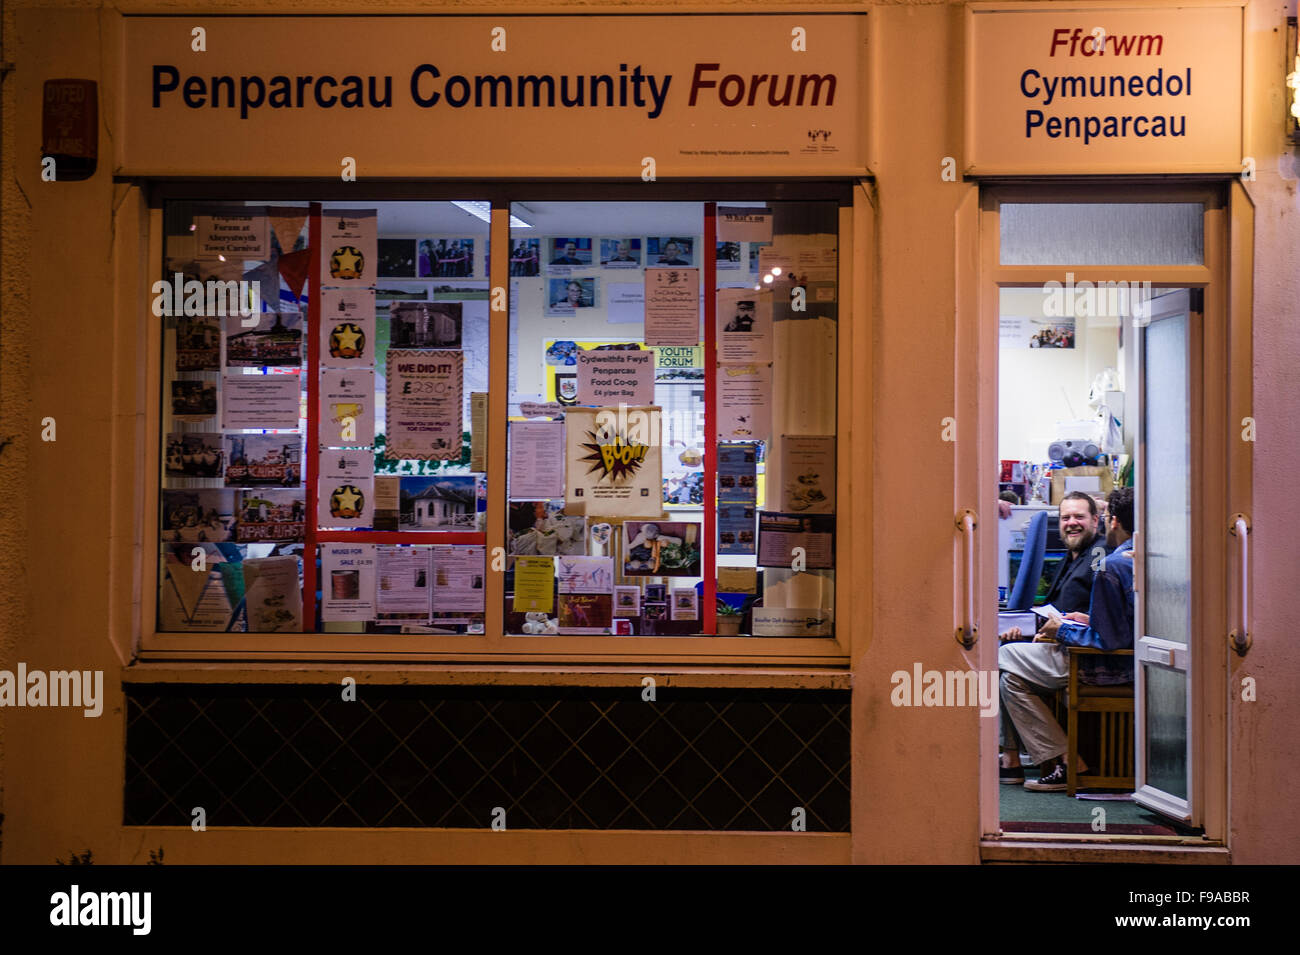 Mitglieder der Penparcau-Community-Forum (Fforwm Cymunedol Penparcau) treffen, soziale Fragen, die die Leben der Menschen, die in ihrem lokalen sozialen Wohnsiedlung, Aberystwyth, Wales UK zu diskutieren Stockfoto